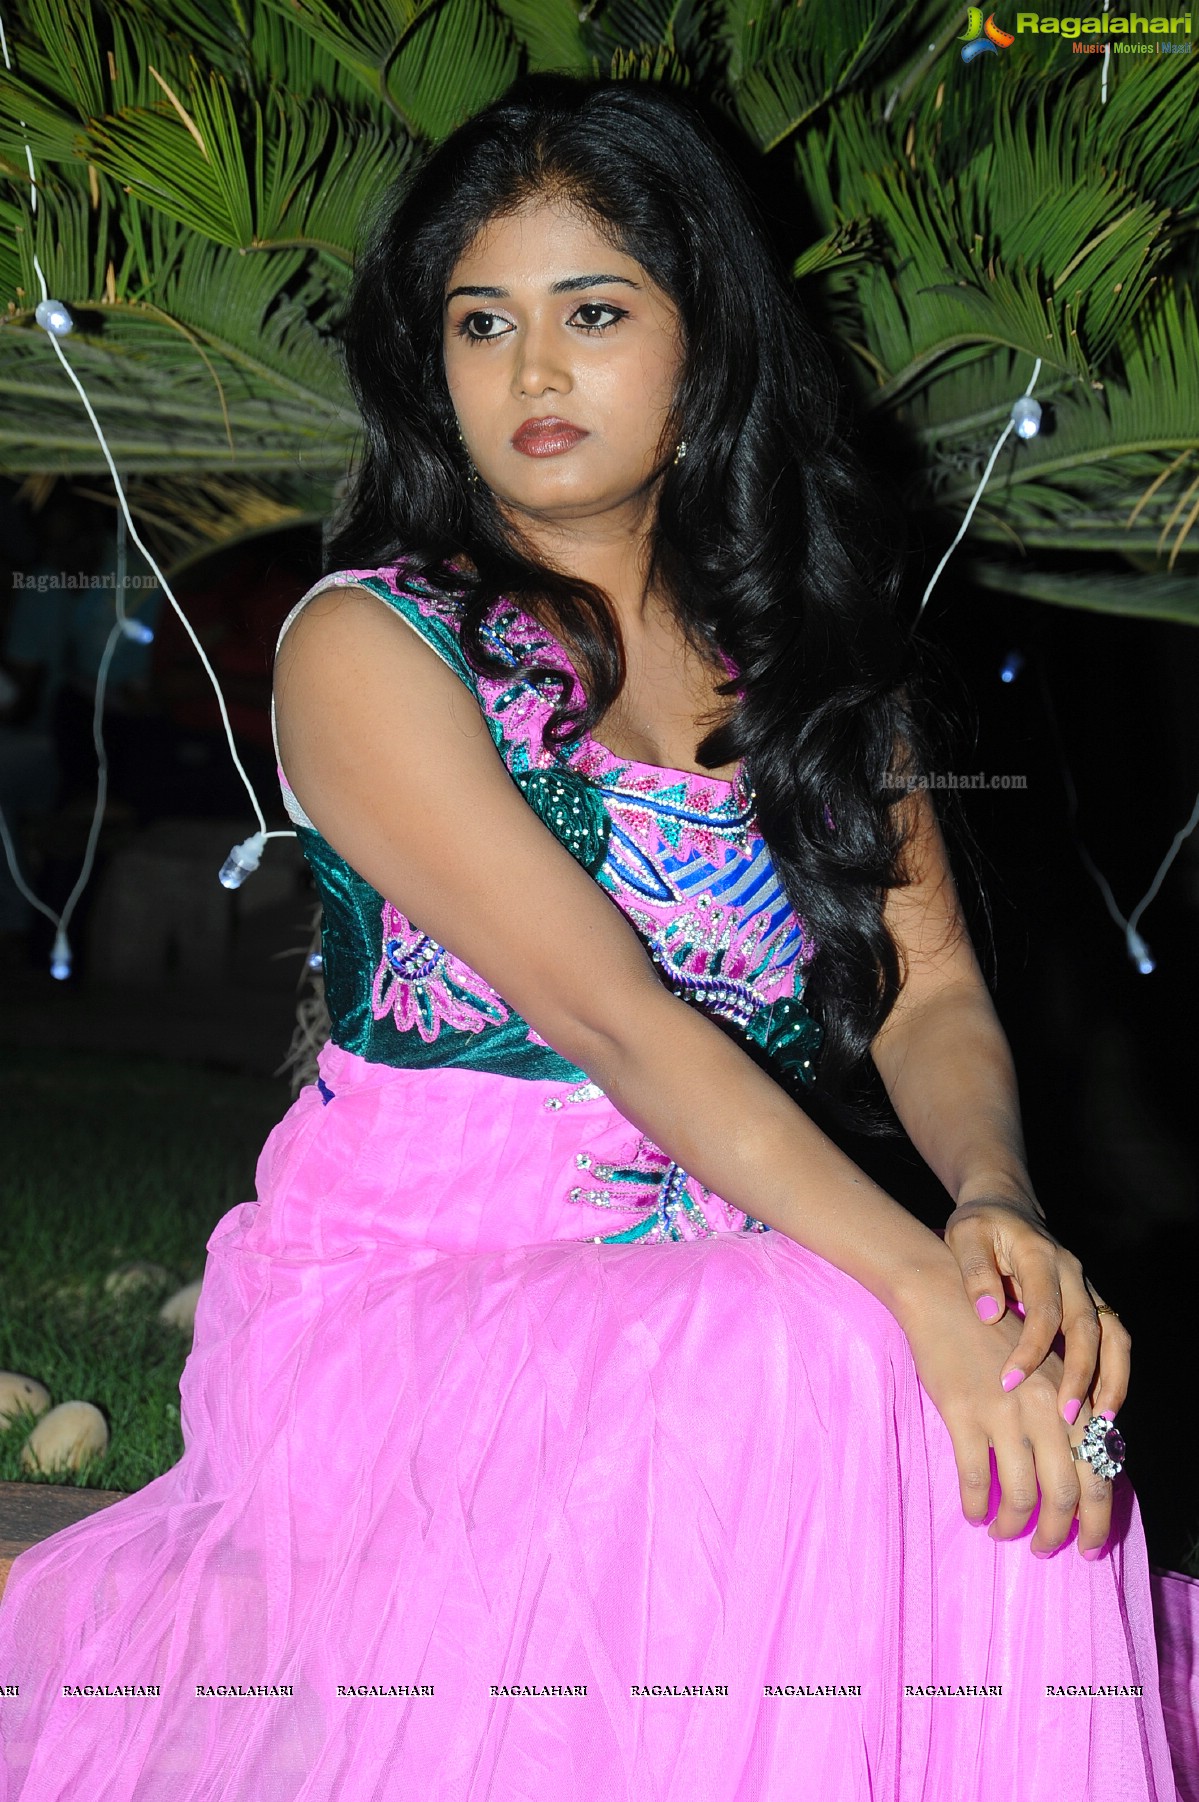 Sunitha Marasiar